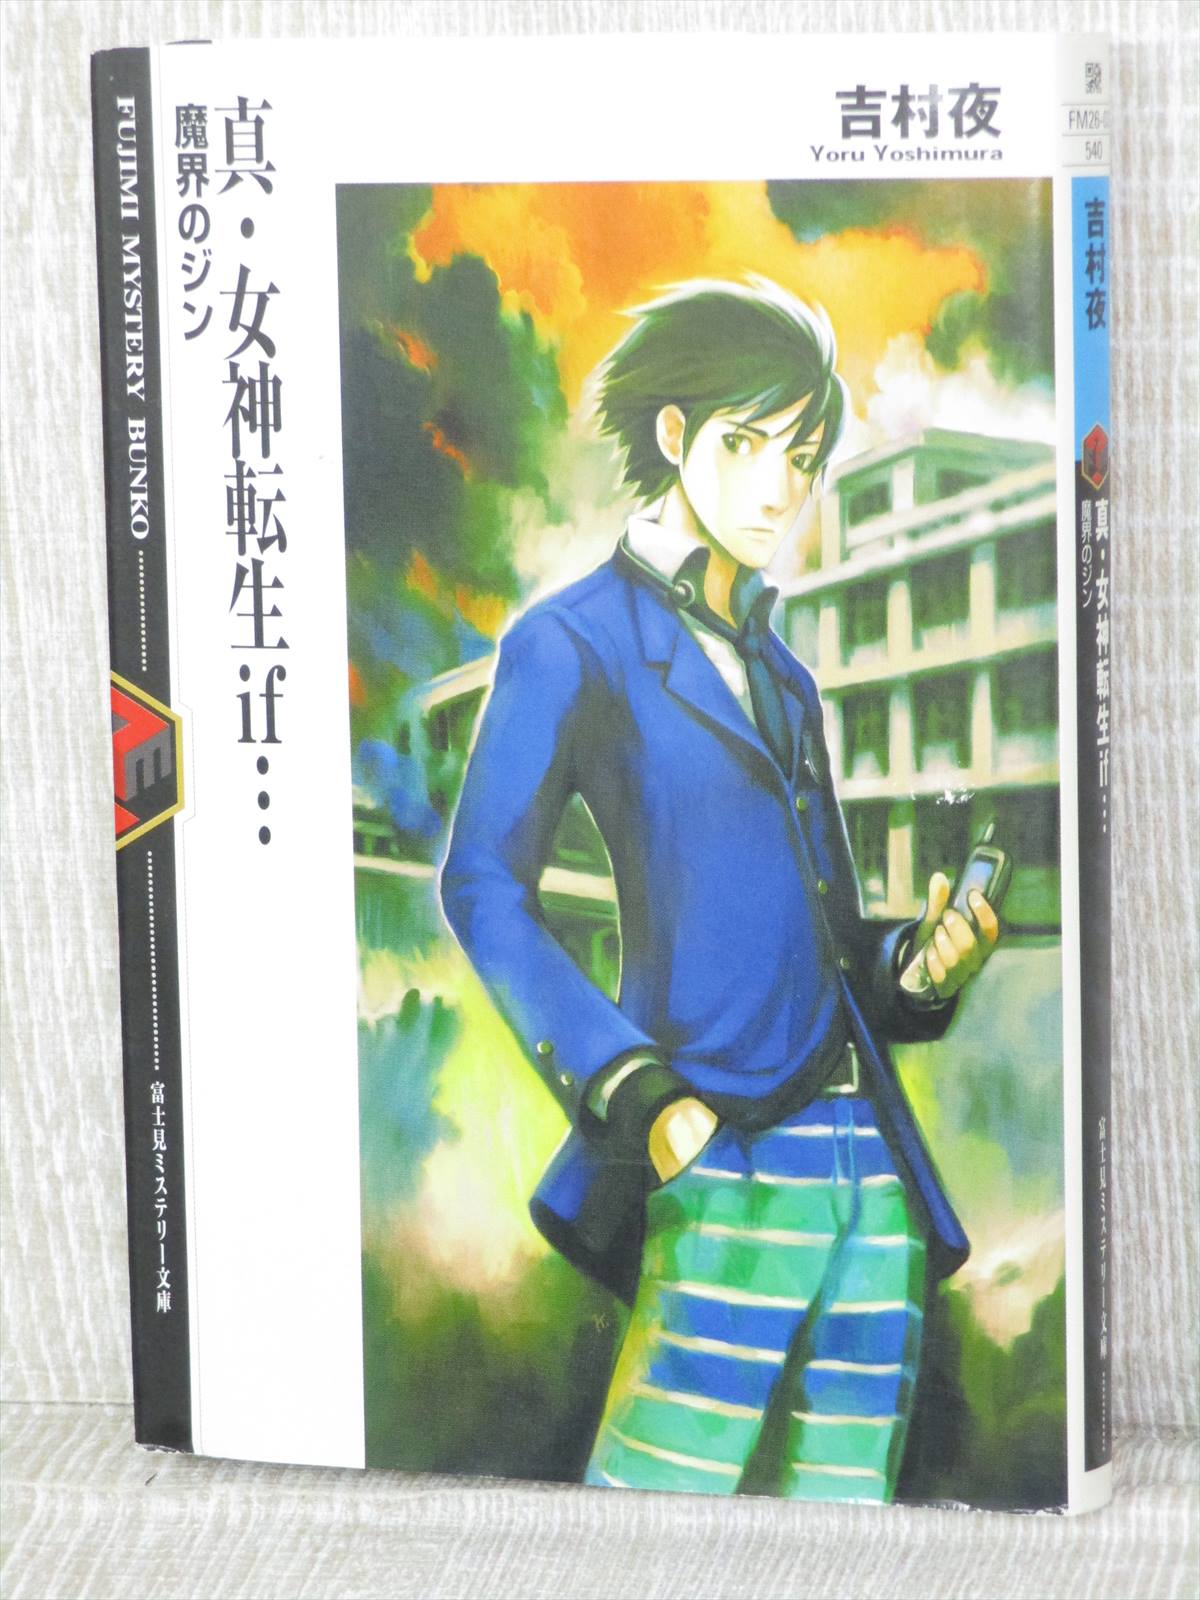 Shin Megami Tensei If Makai No Jin Novel Yoru Yoshimura Book 02 Fj17 Ebay